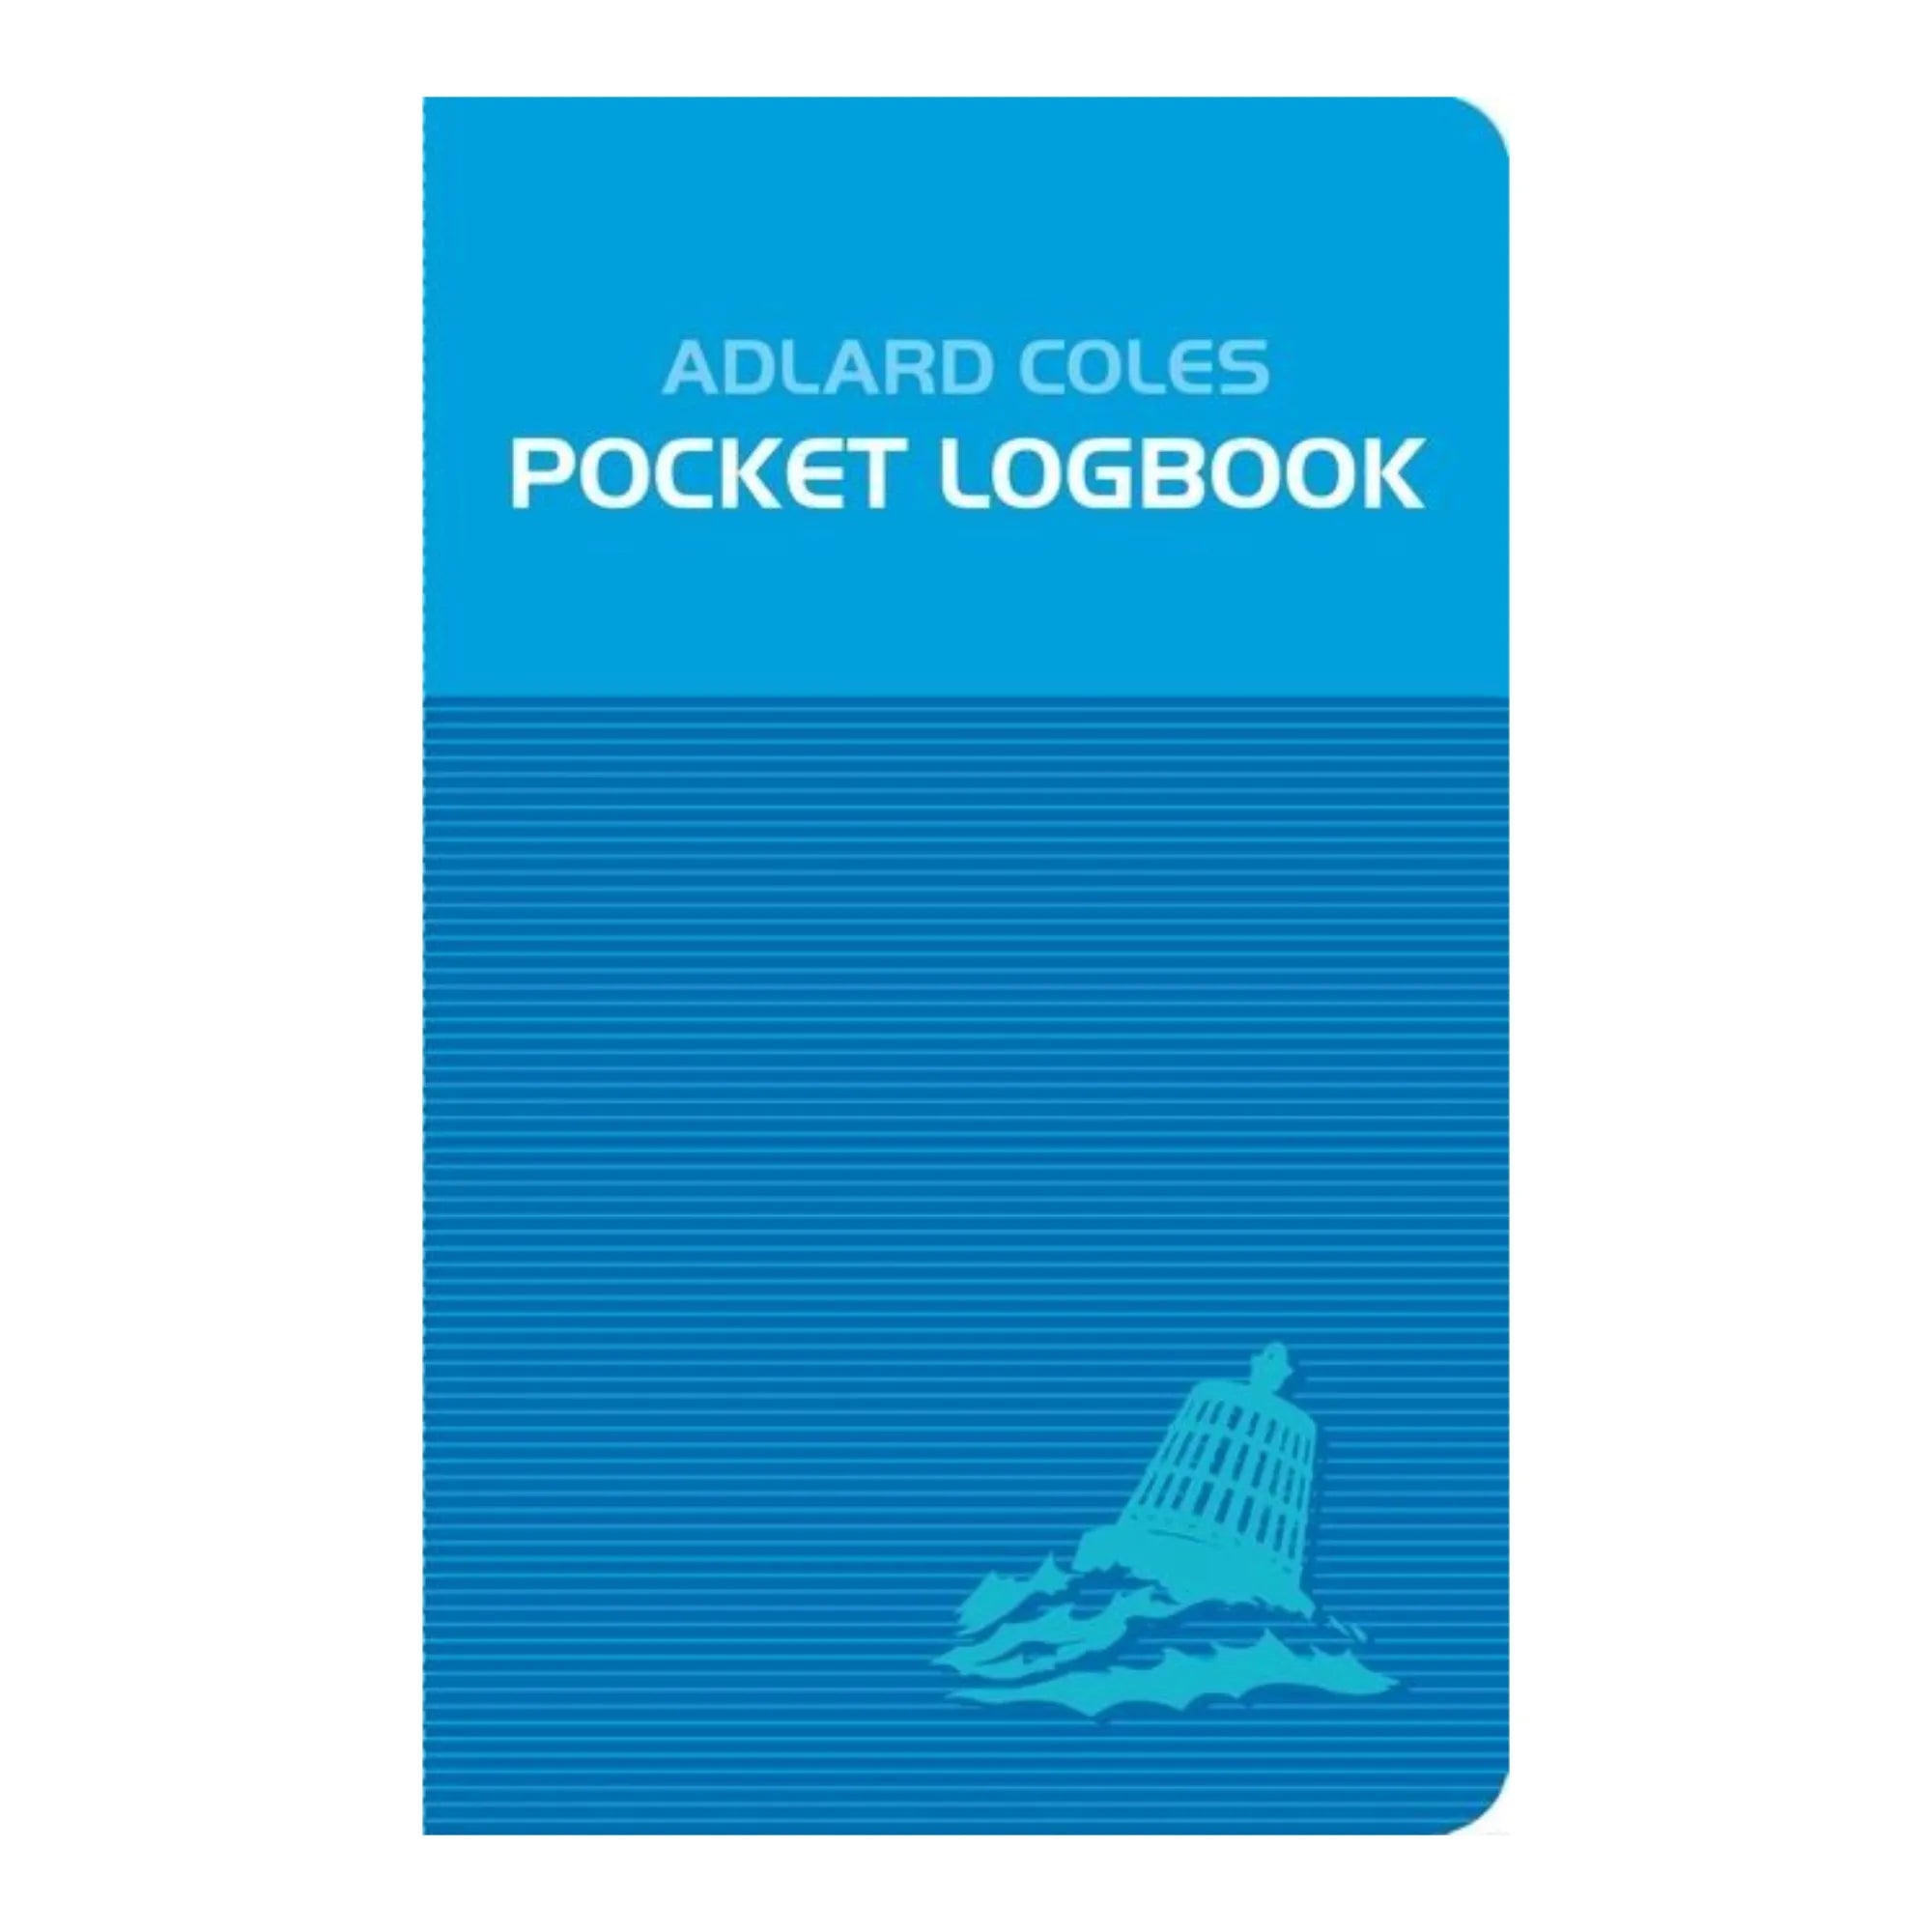 The Adlard Coles Pocket Logbook